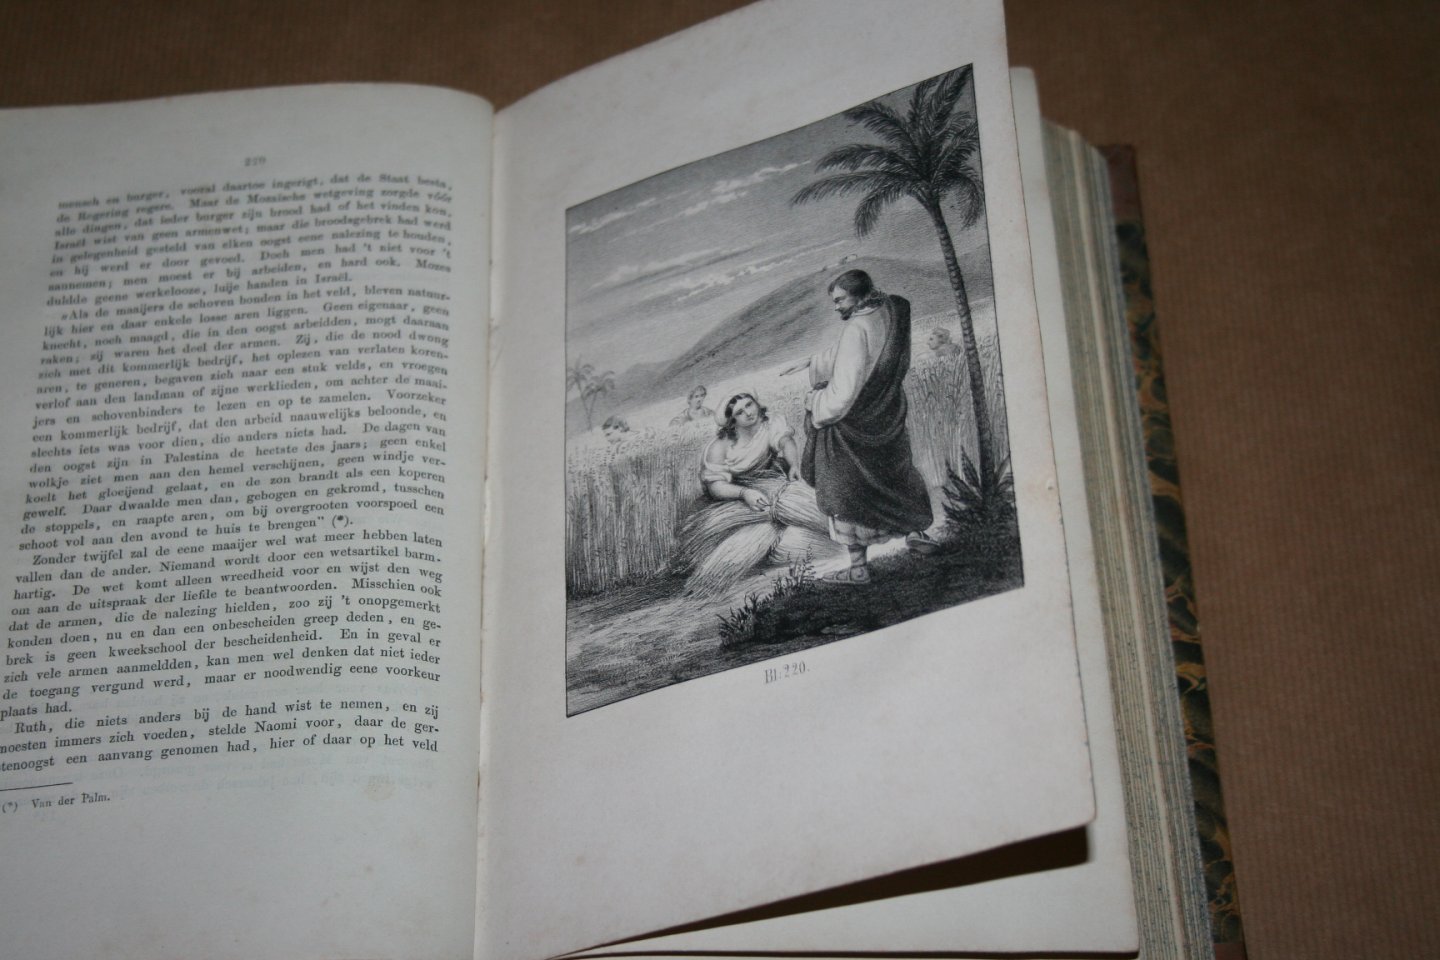  - Flora - Tijdschrift voor dames --  Jaargang 1856 -- Met platen